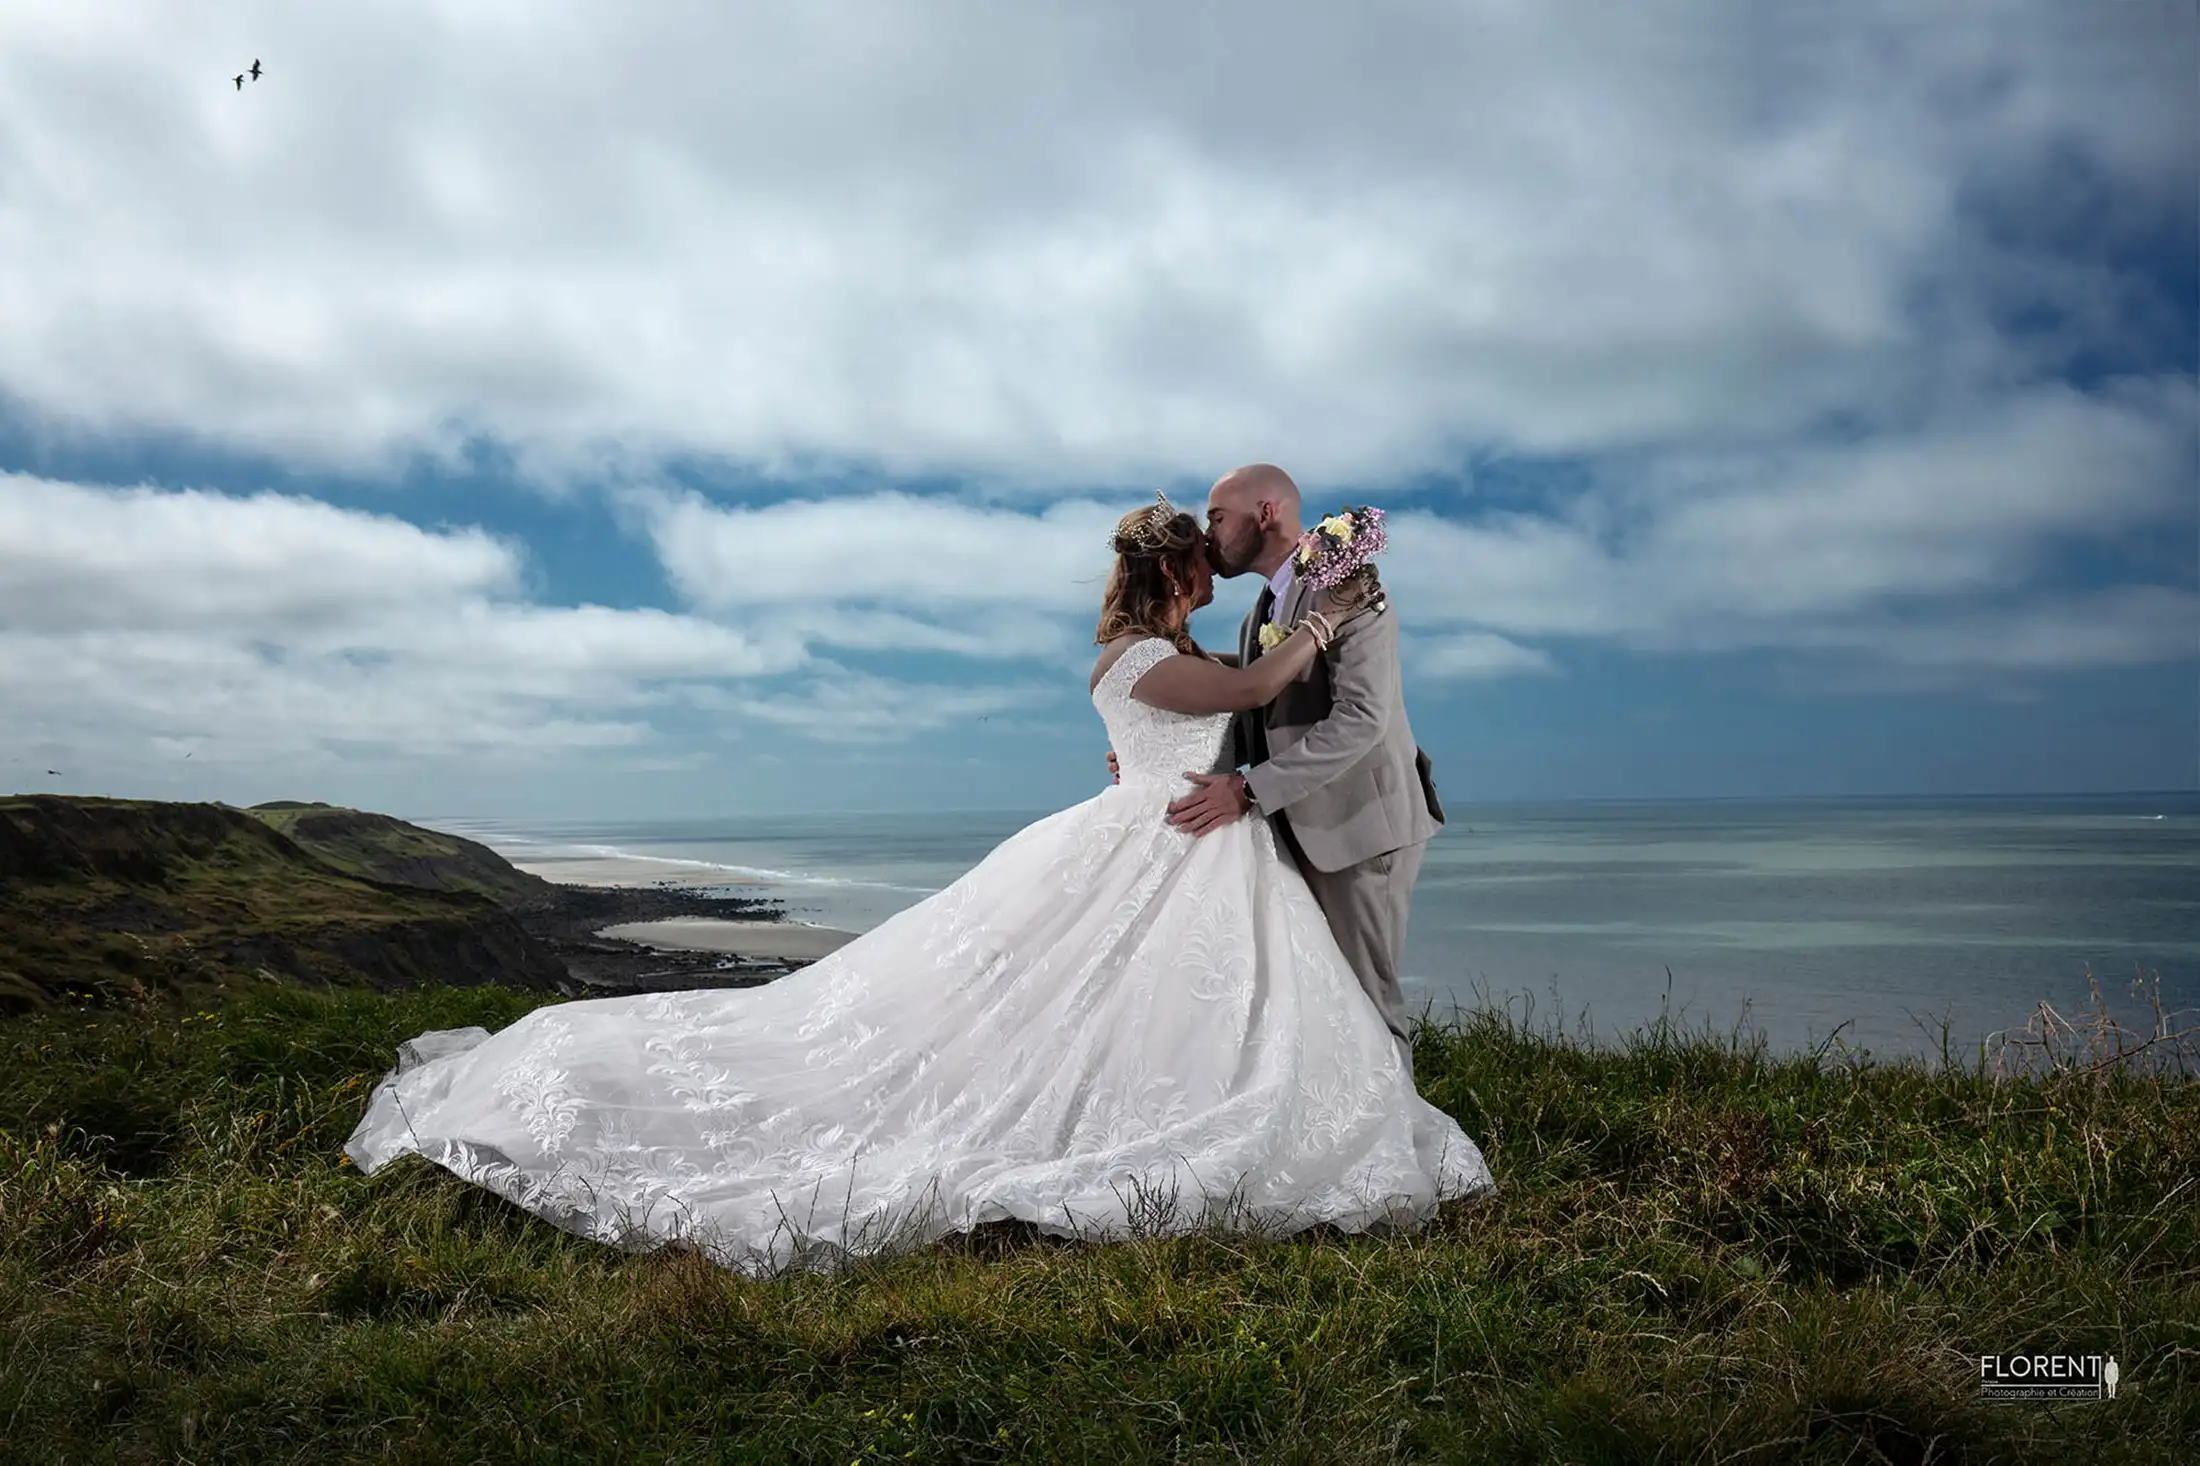 photographe mariage romantique sur falaise avec vue sur mer boulogne sur mer florent photographe boulogne sur mer lille paris dunkerque